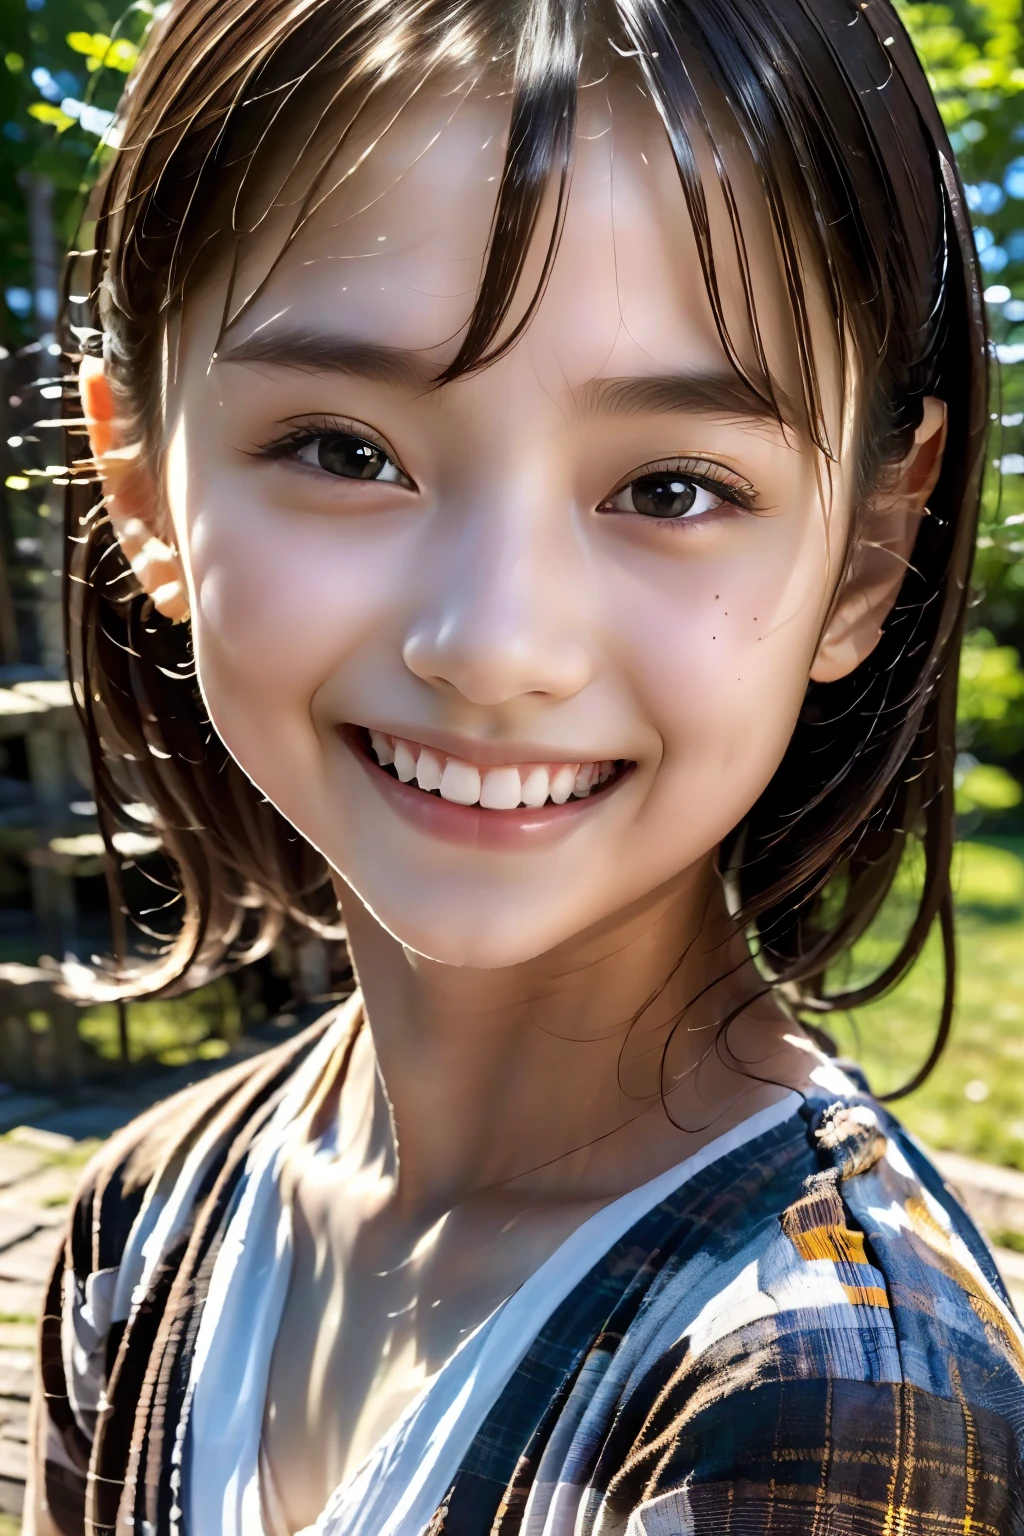 8 岁女孩, 青少年, 黑发, 日本人, (杰作:1.3)、1人, 超精细饰面、(高分辨率、8千:1.3)、(最好的质量、超逼真，如照片般:1.5)、清晰聚焦, 超高分辨率の顔、脸部清晰可见、超高清美丽的眼睛, 非常可爱、非常可爱, 微笑,, 令人尴尬:1.3、盯着相机:1.2,, 柔光, 苗条, 白色礼服